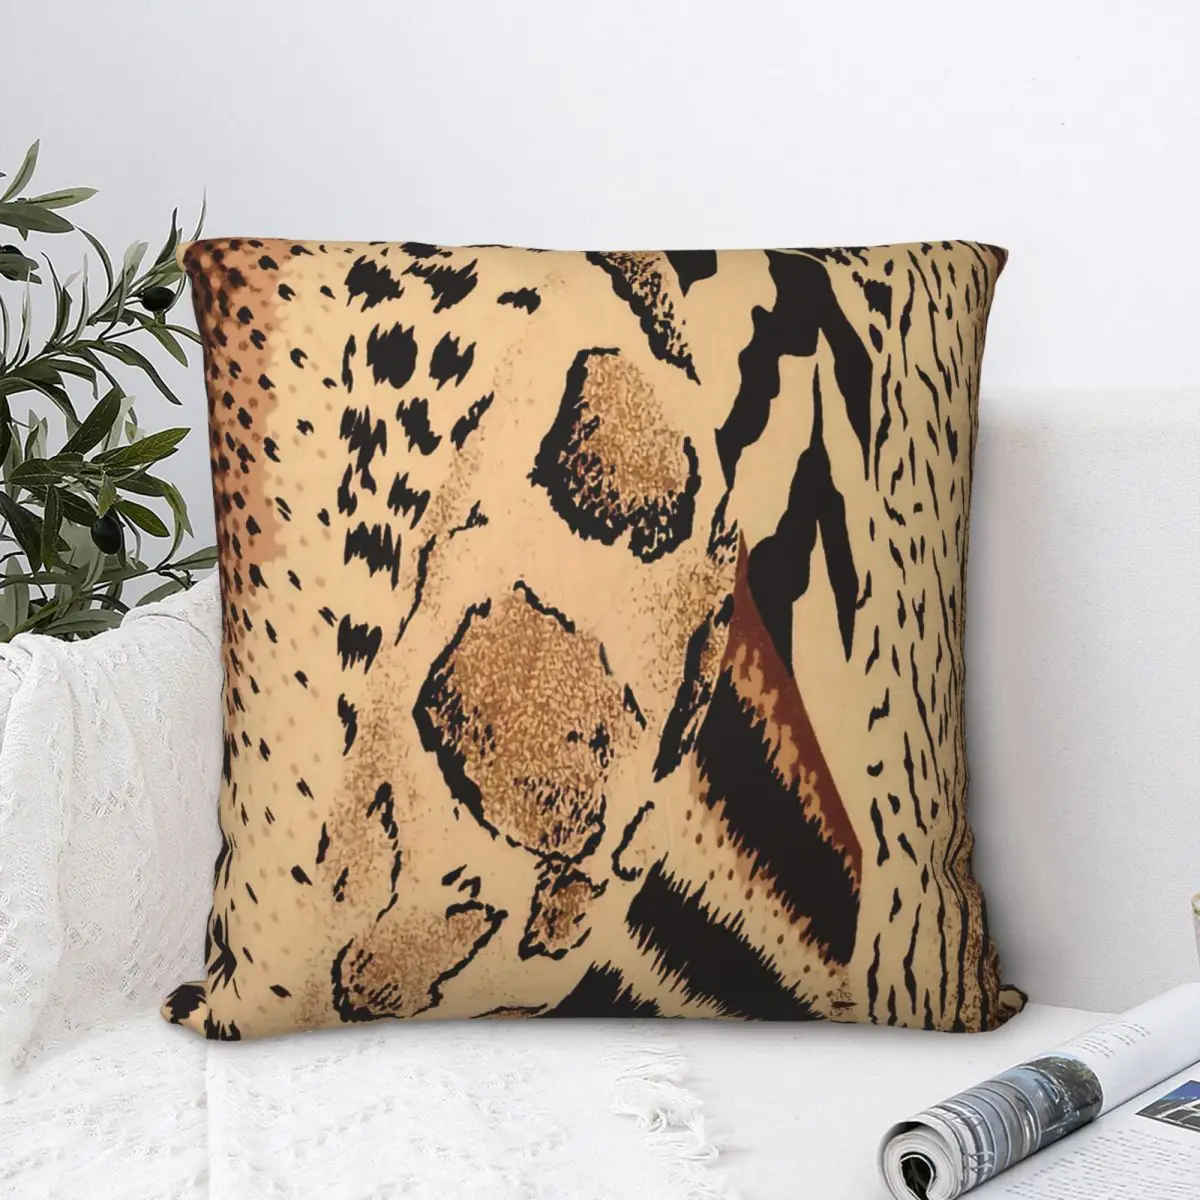 

Brown Black Tan Cheetah Leopard Safari Animal Print Throw Pillow Case Cushion For Home Sofa Chair Decorative Hug Pillowcase